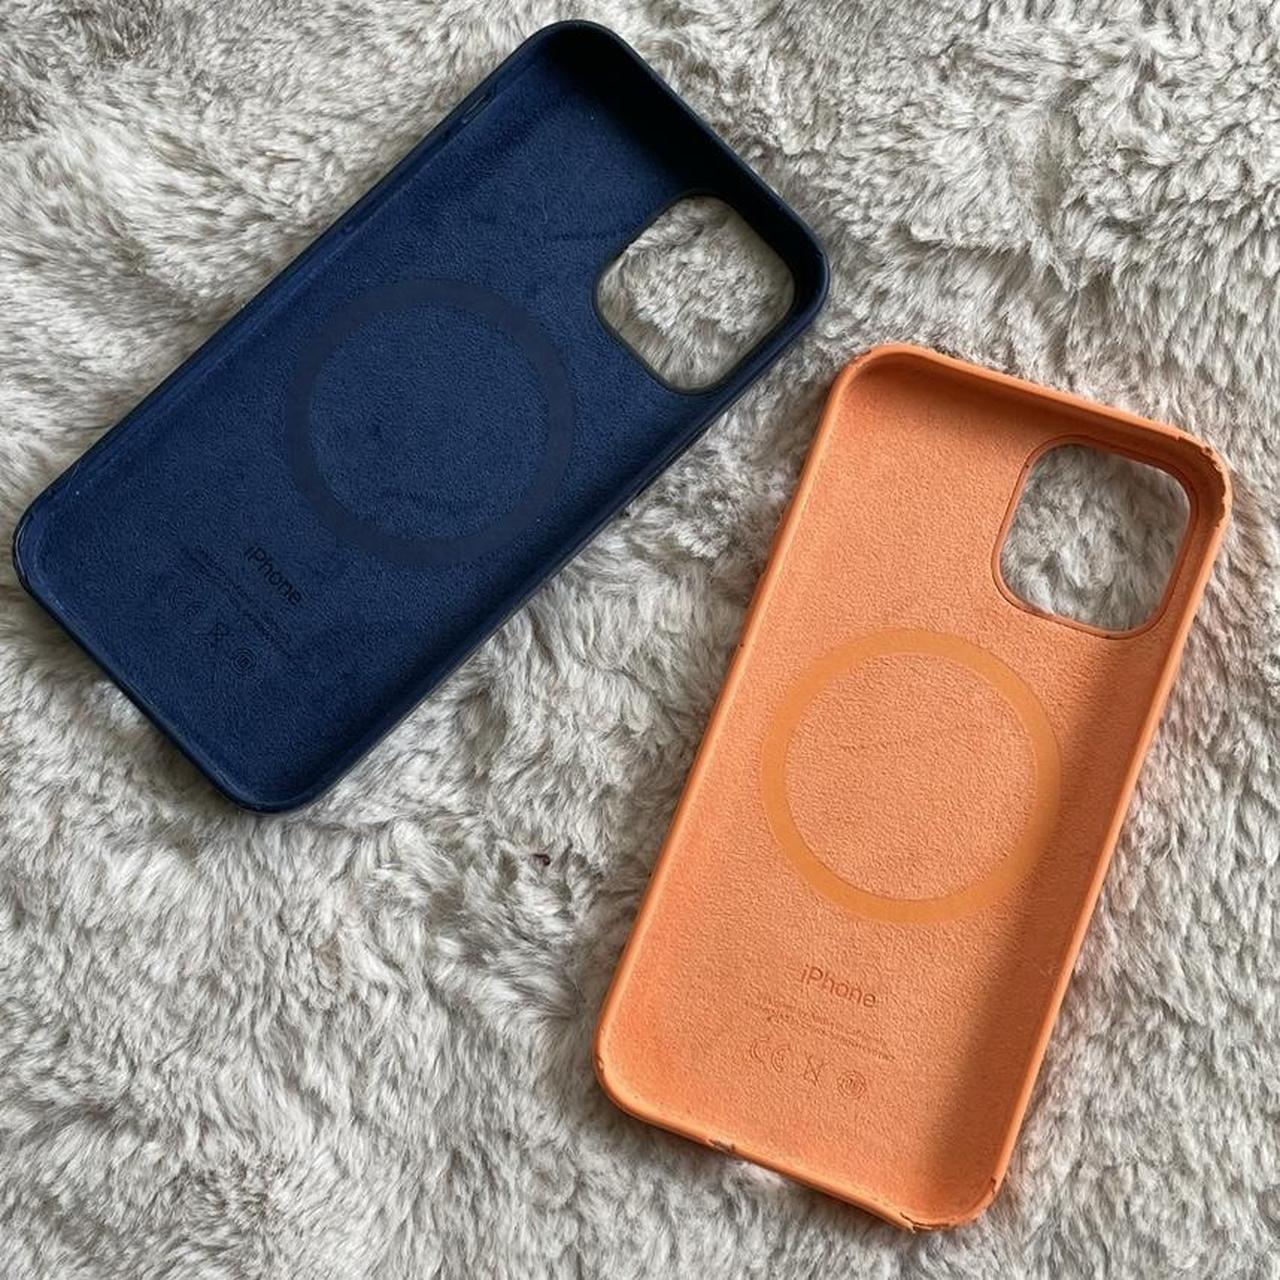 Apple Navy and Orange Phone-cases (2)